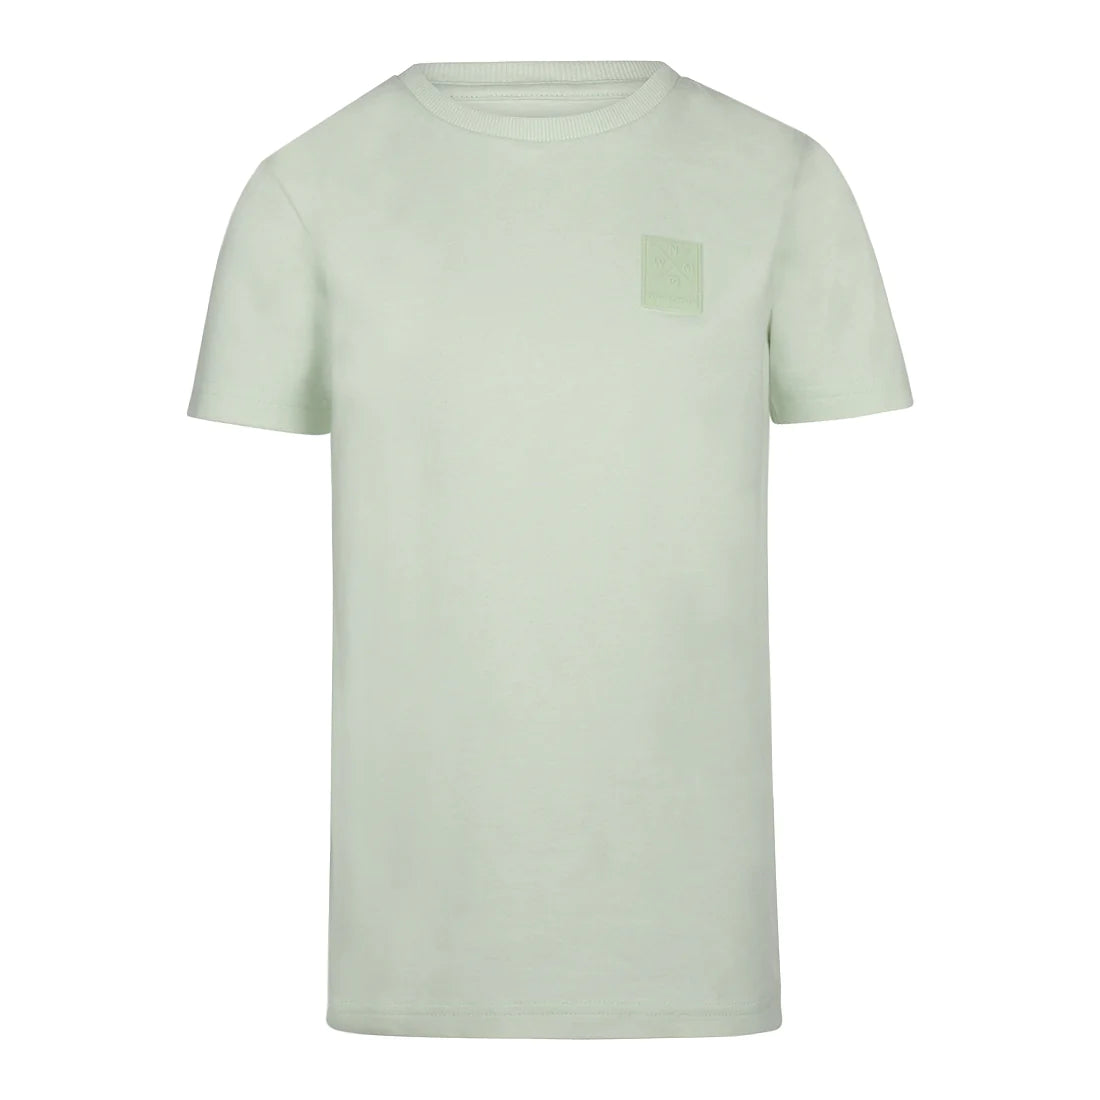 Jongens T-shirt ss van No Way Monday in de kleur Mint green in maat 164.